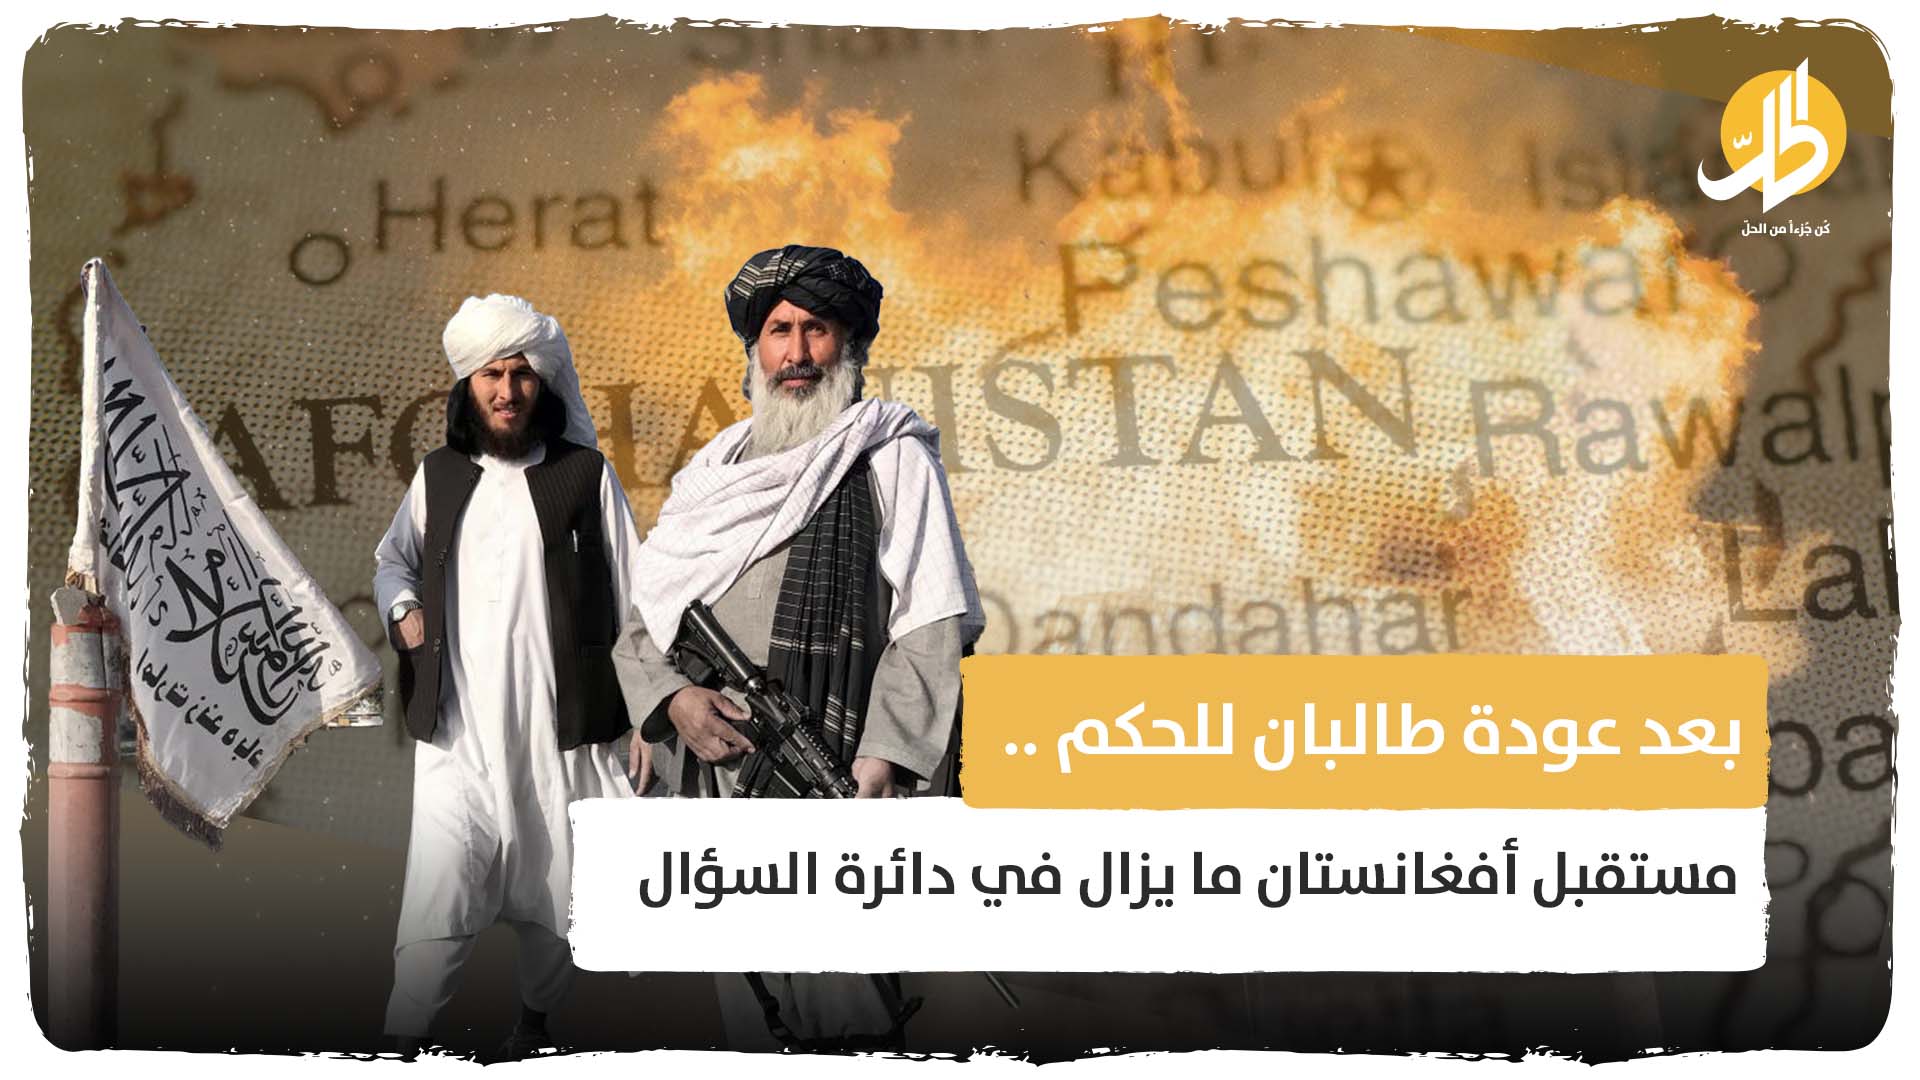 بعد أكثر من 100 يوم على حكم “طالبان” .. مستقبل أفغانستان لايزال في دائرة السؤال